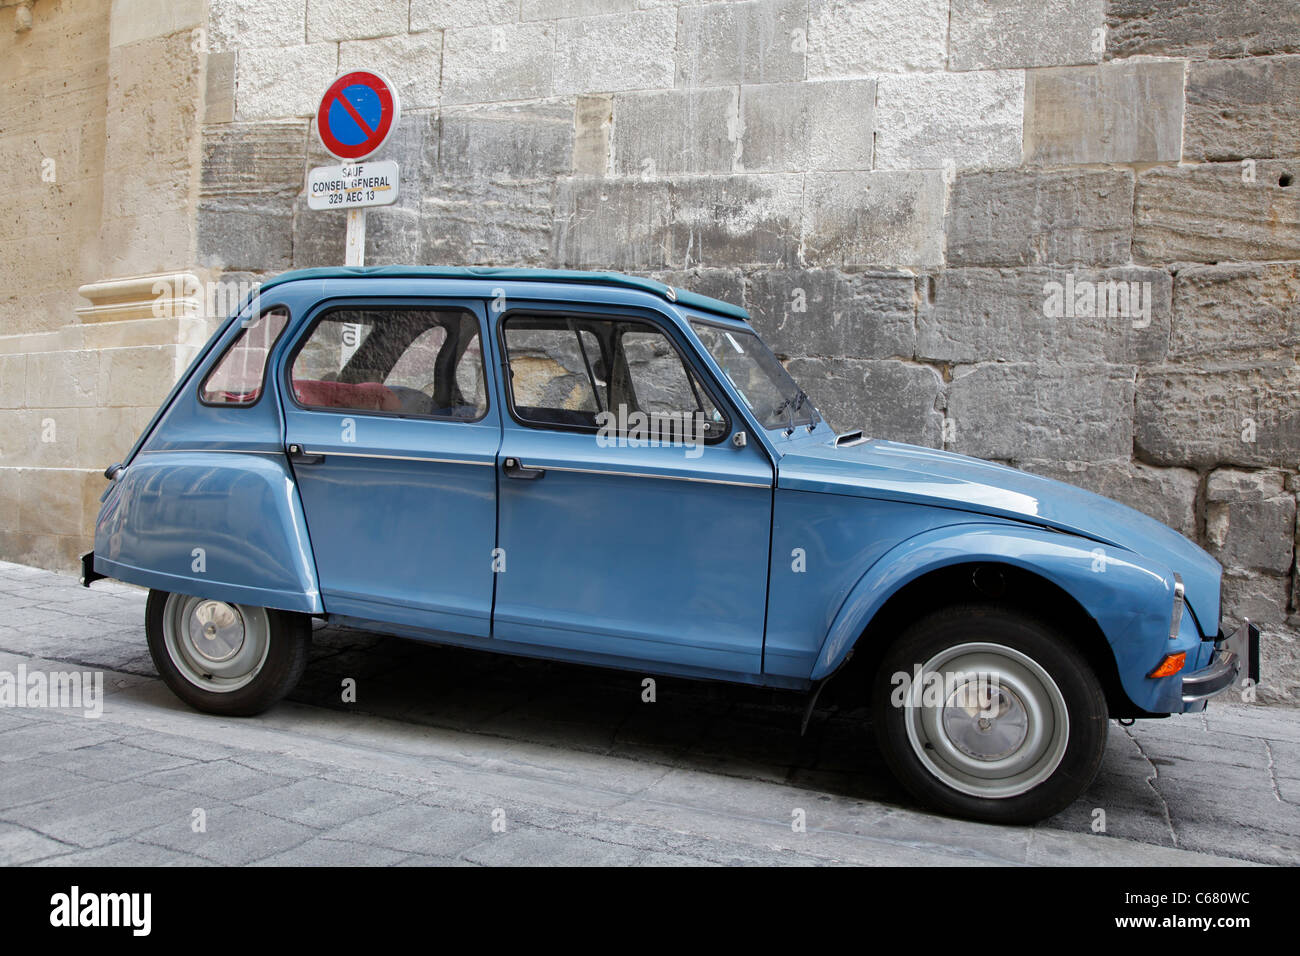 Ein altes französisches Auto parkten unter "Parkverbot" Zeichen Stockfoto